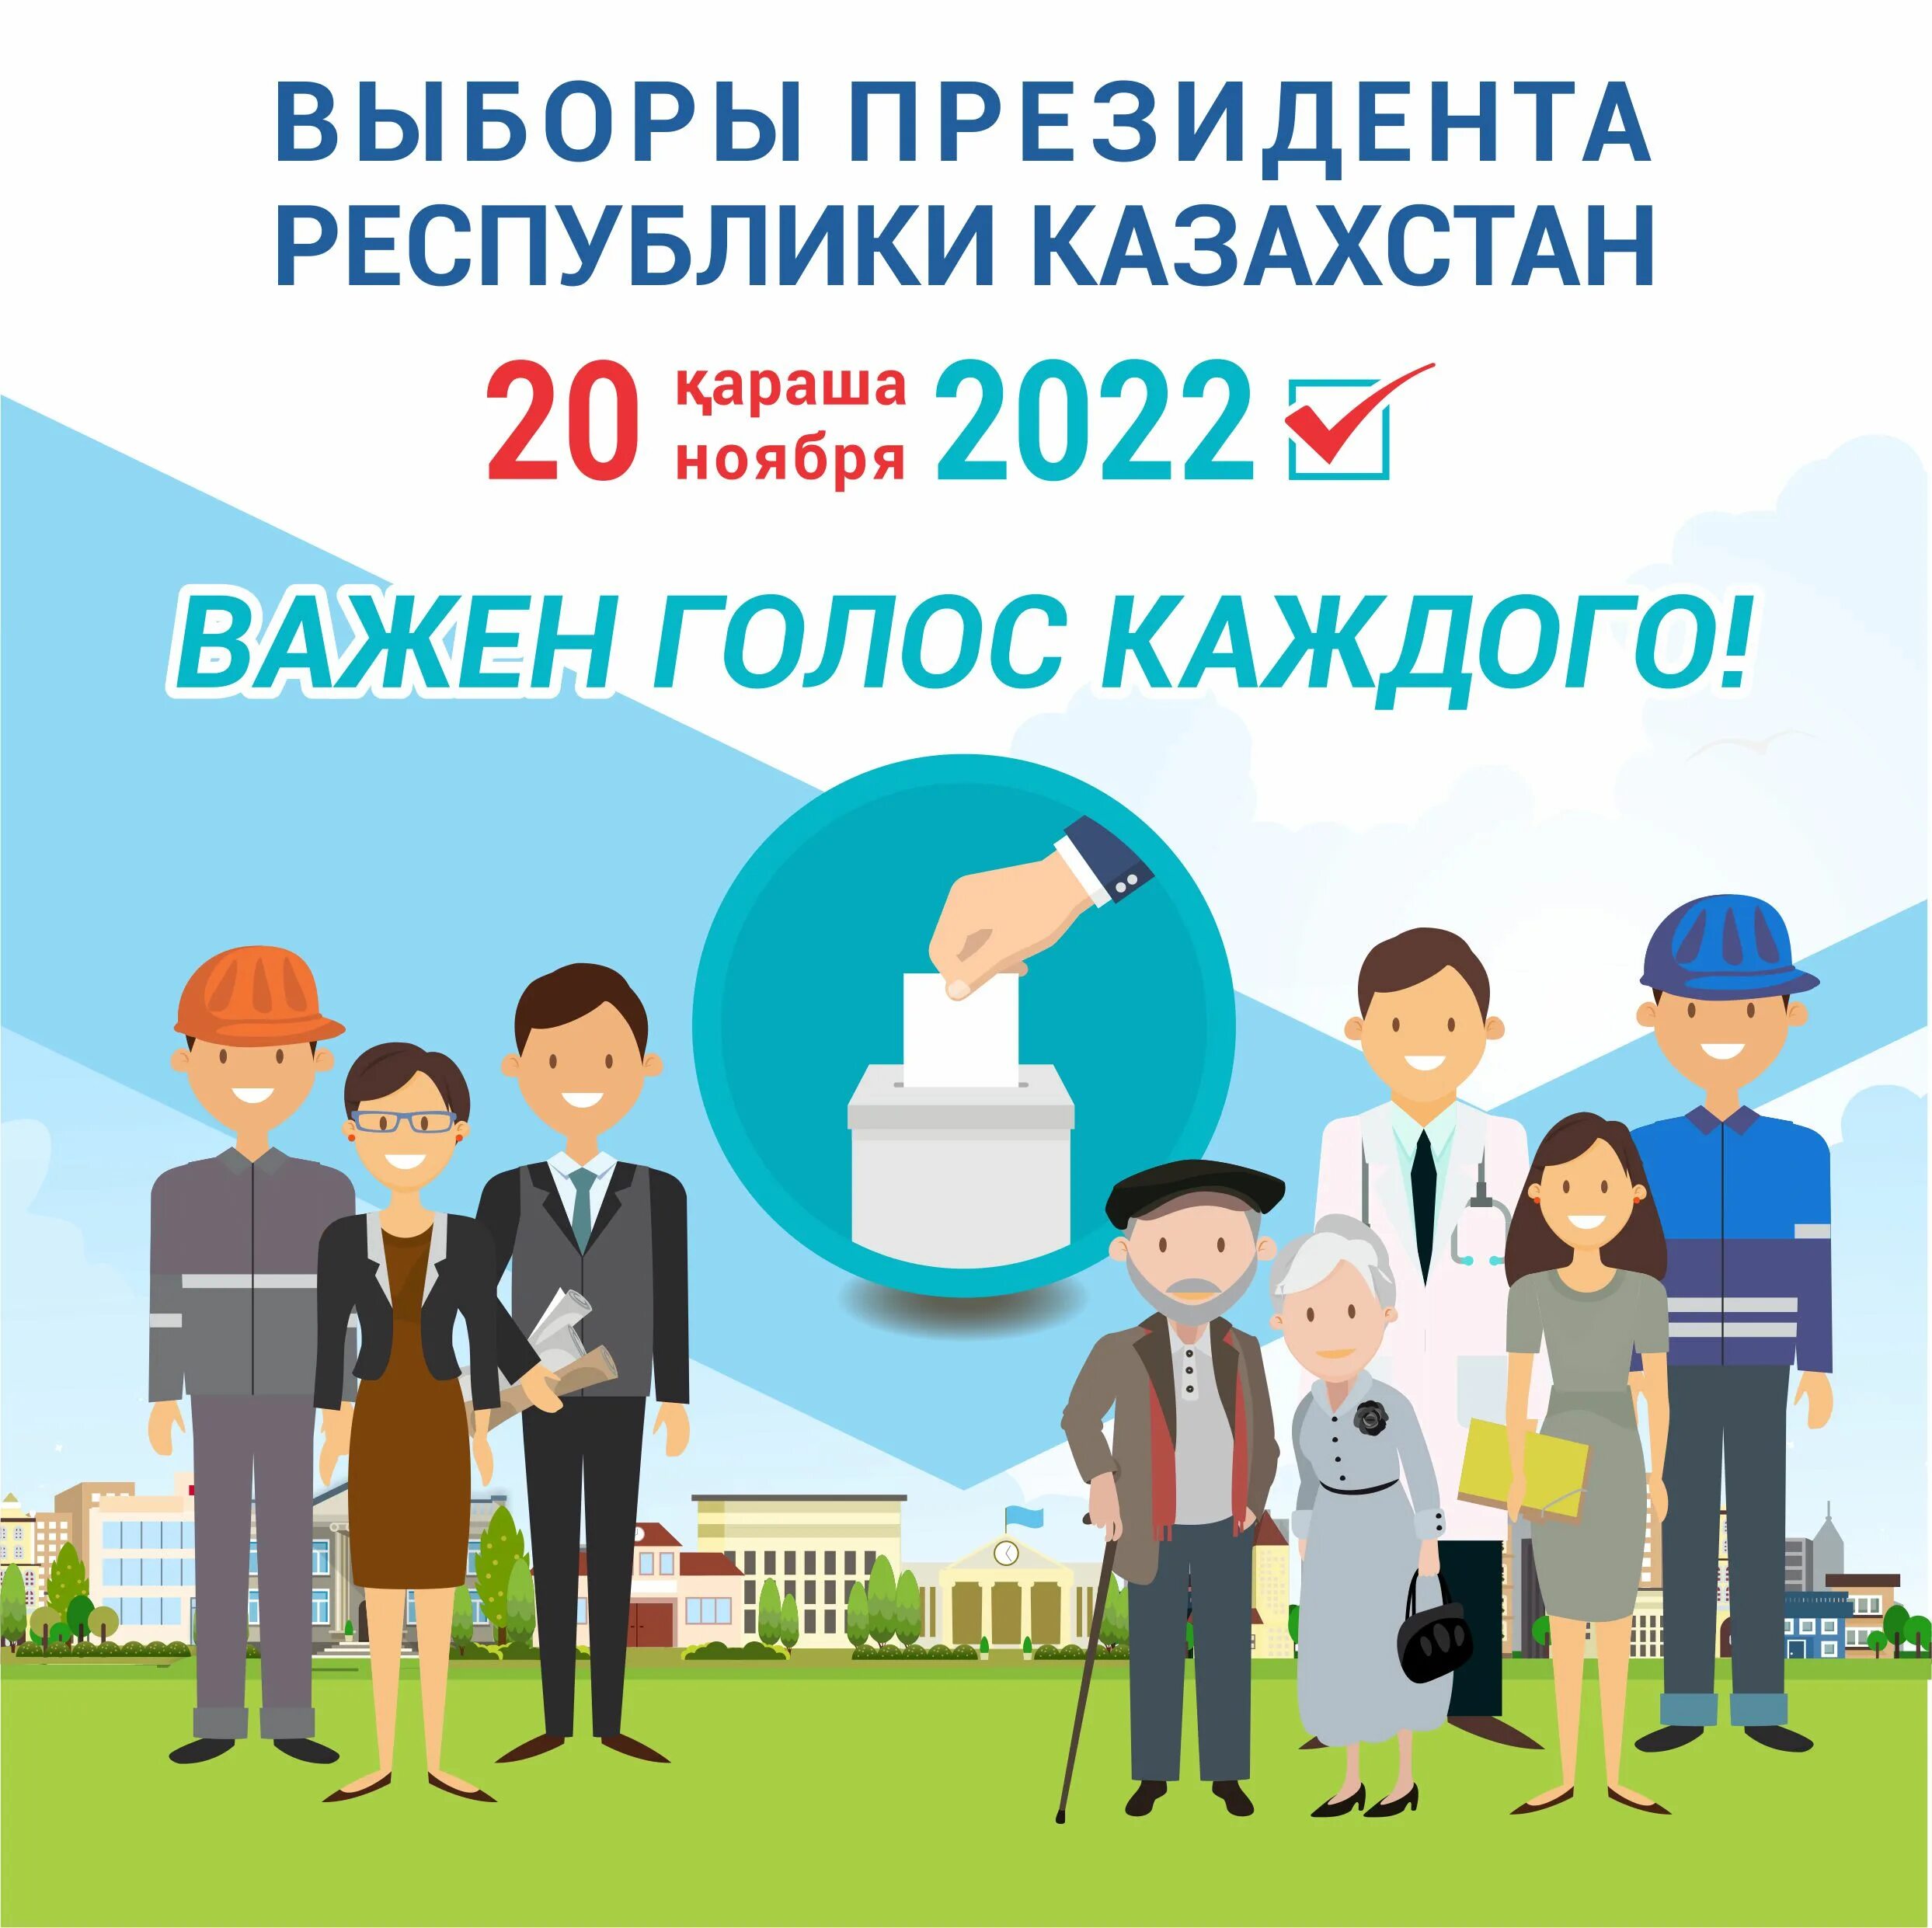 Выборы президента Казахстана. Выборы в Казахстане в 2022. Президентские выборы в Казахстане 2022. Выборы 20 школа